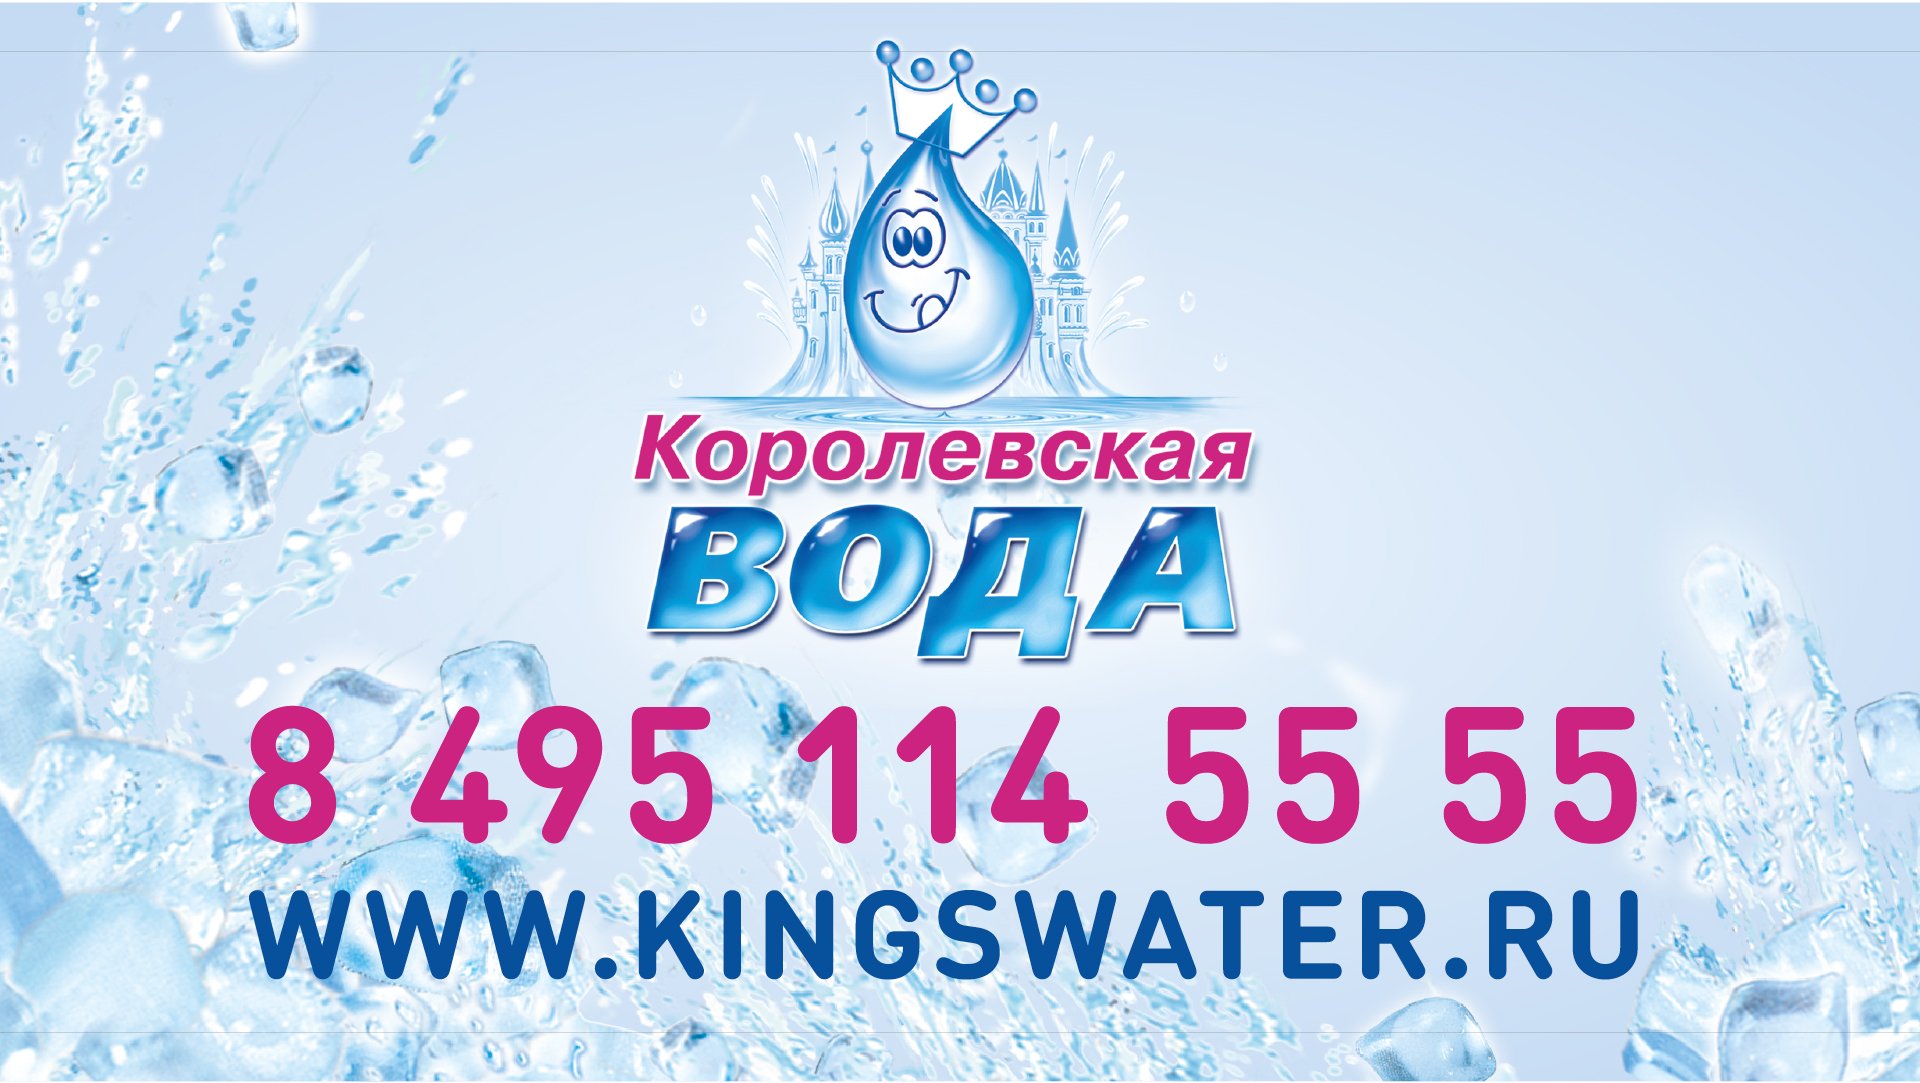 Королевская вода. ООО Королевская вода. Королевская вода логотип. Королевская вода сотрудники. Королевская вода минск